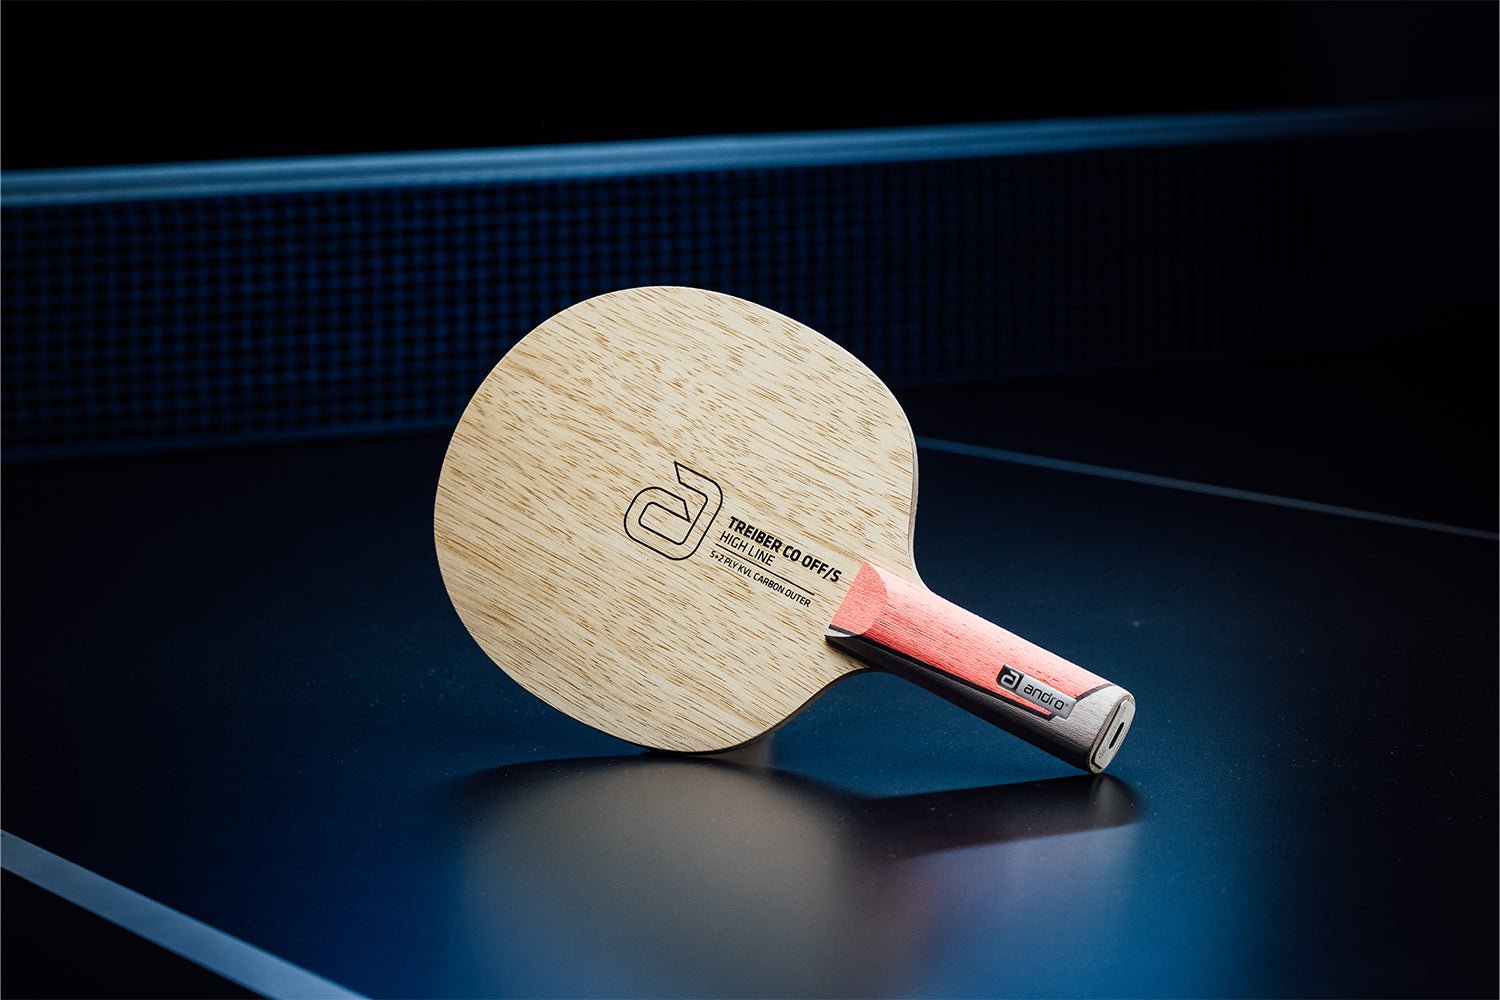 Stehender andro Treiber CO OFF/S Tischtennisschläger mit geradem Griff, Janova Sensor, USB-C-Buchse auf Tischtennistisch